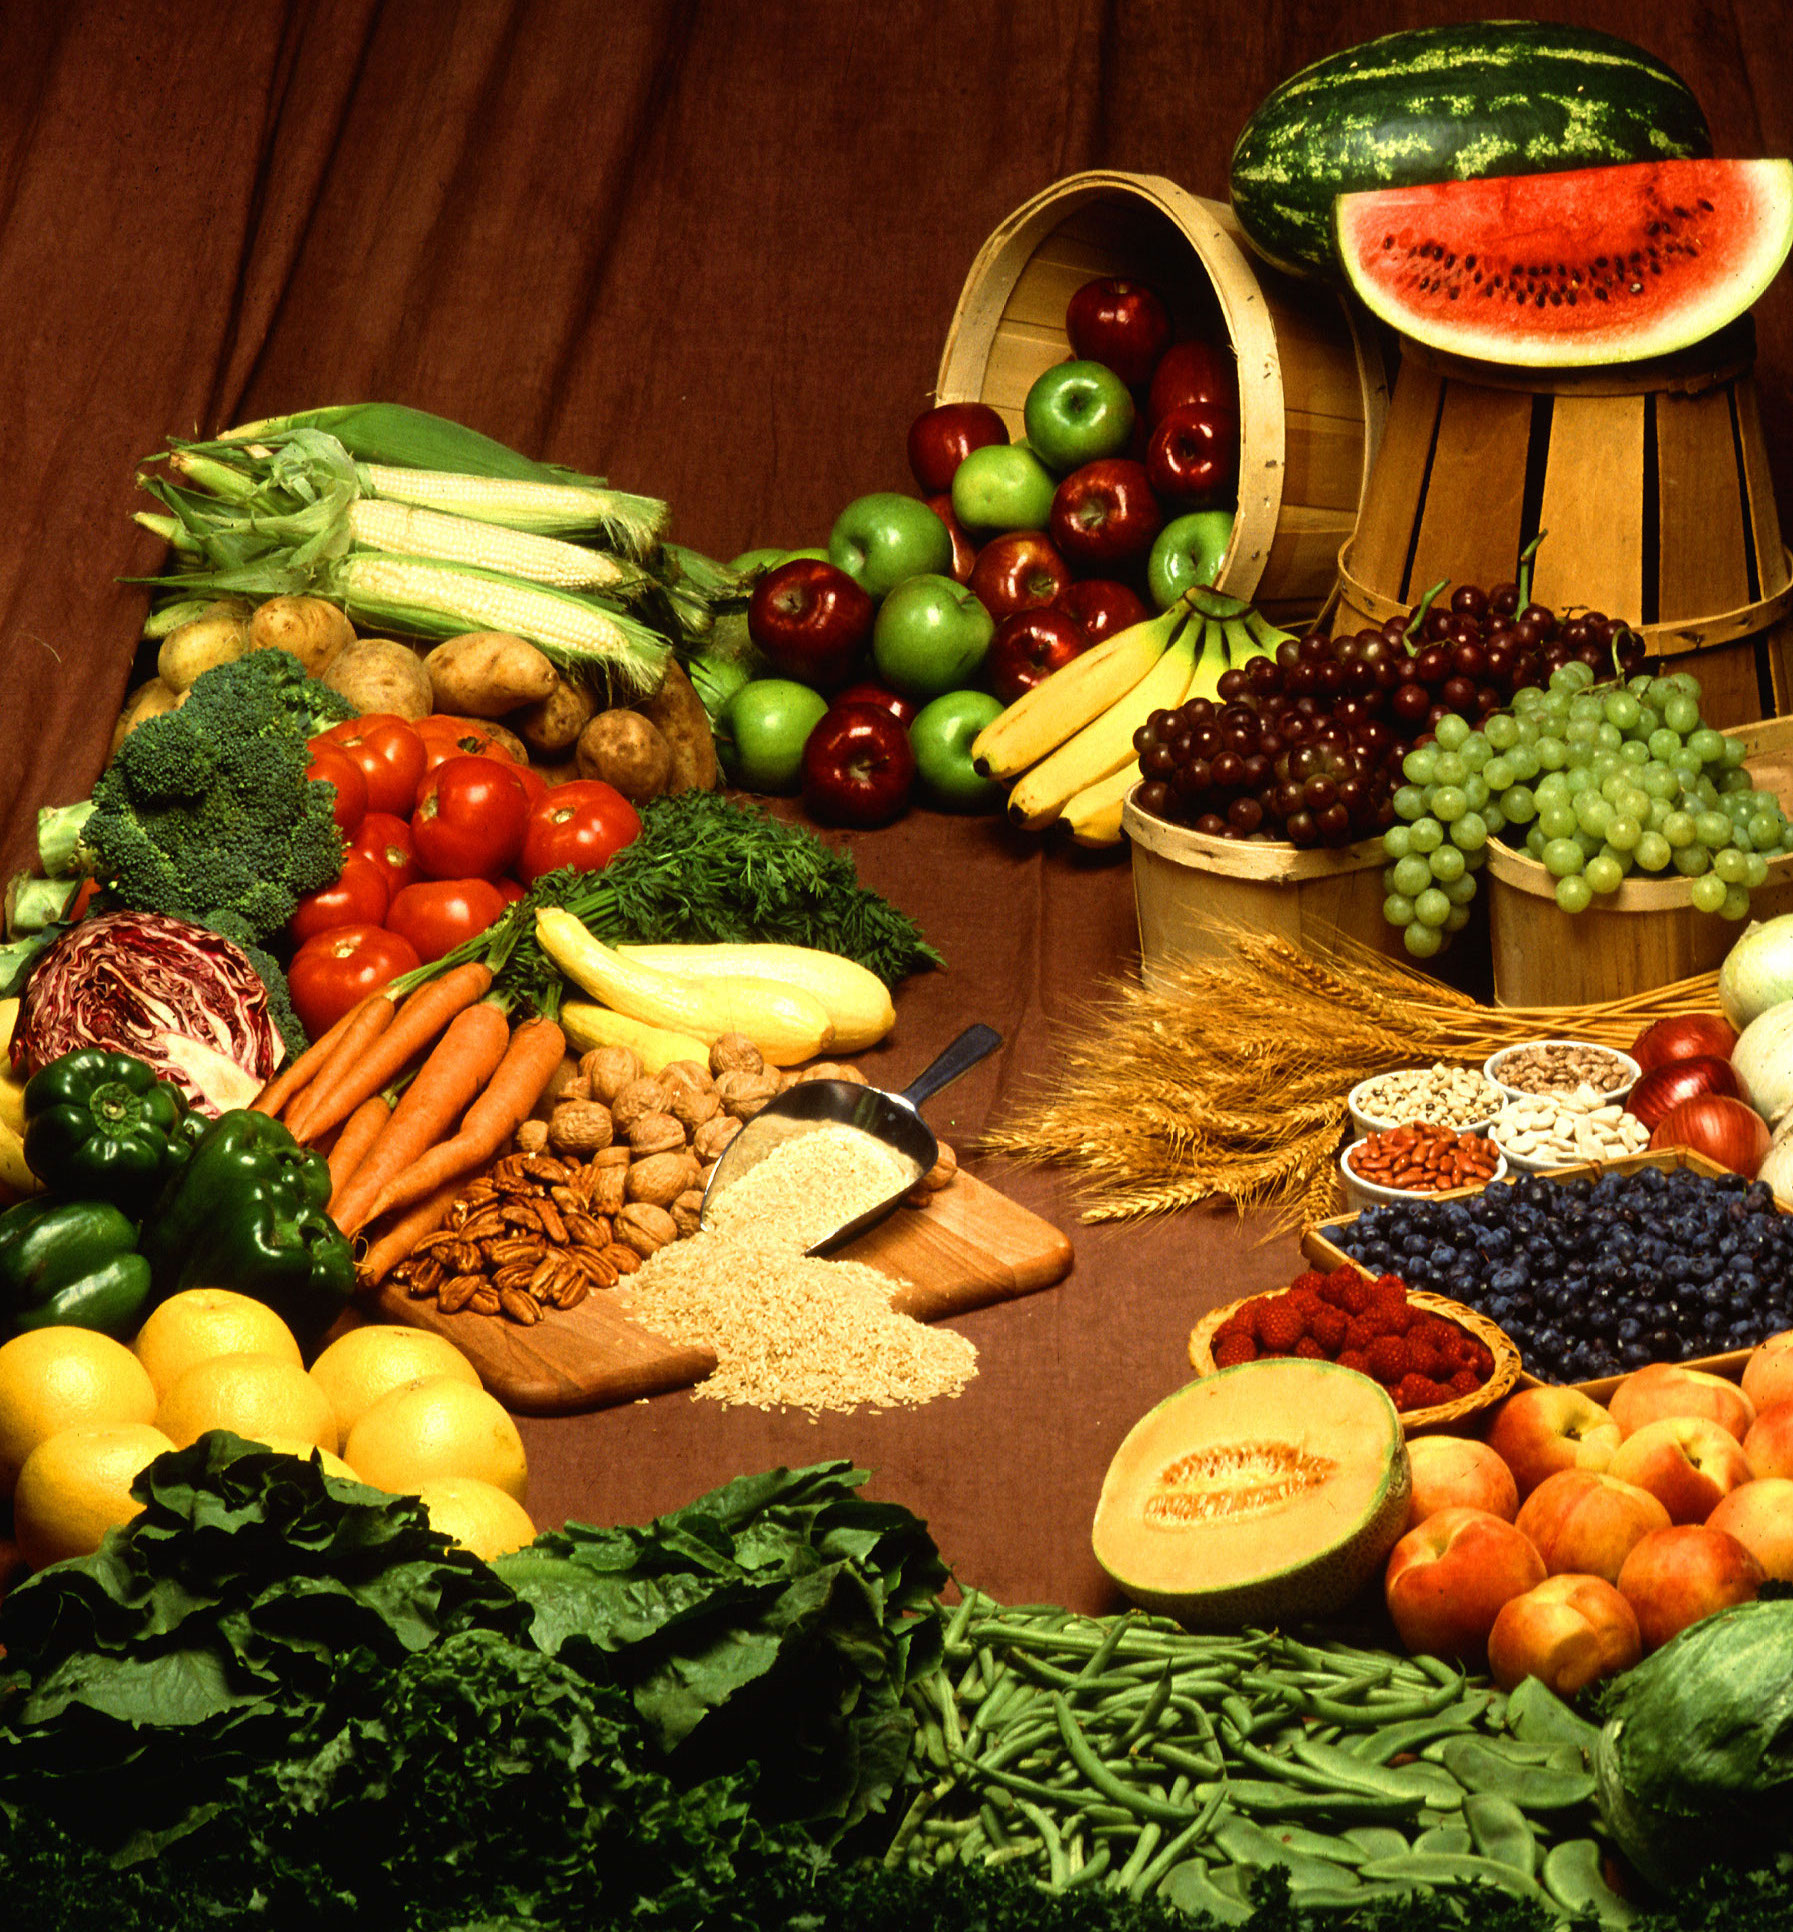 Plein de légumes et fruits sur une table en bois